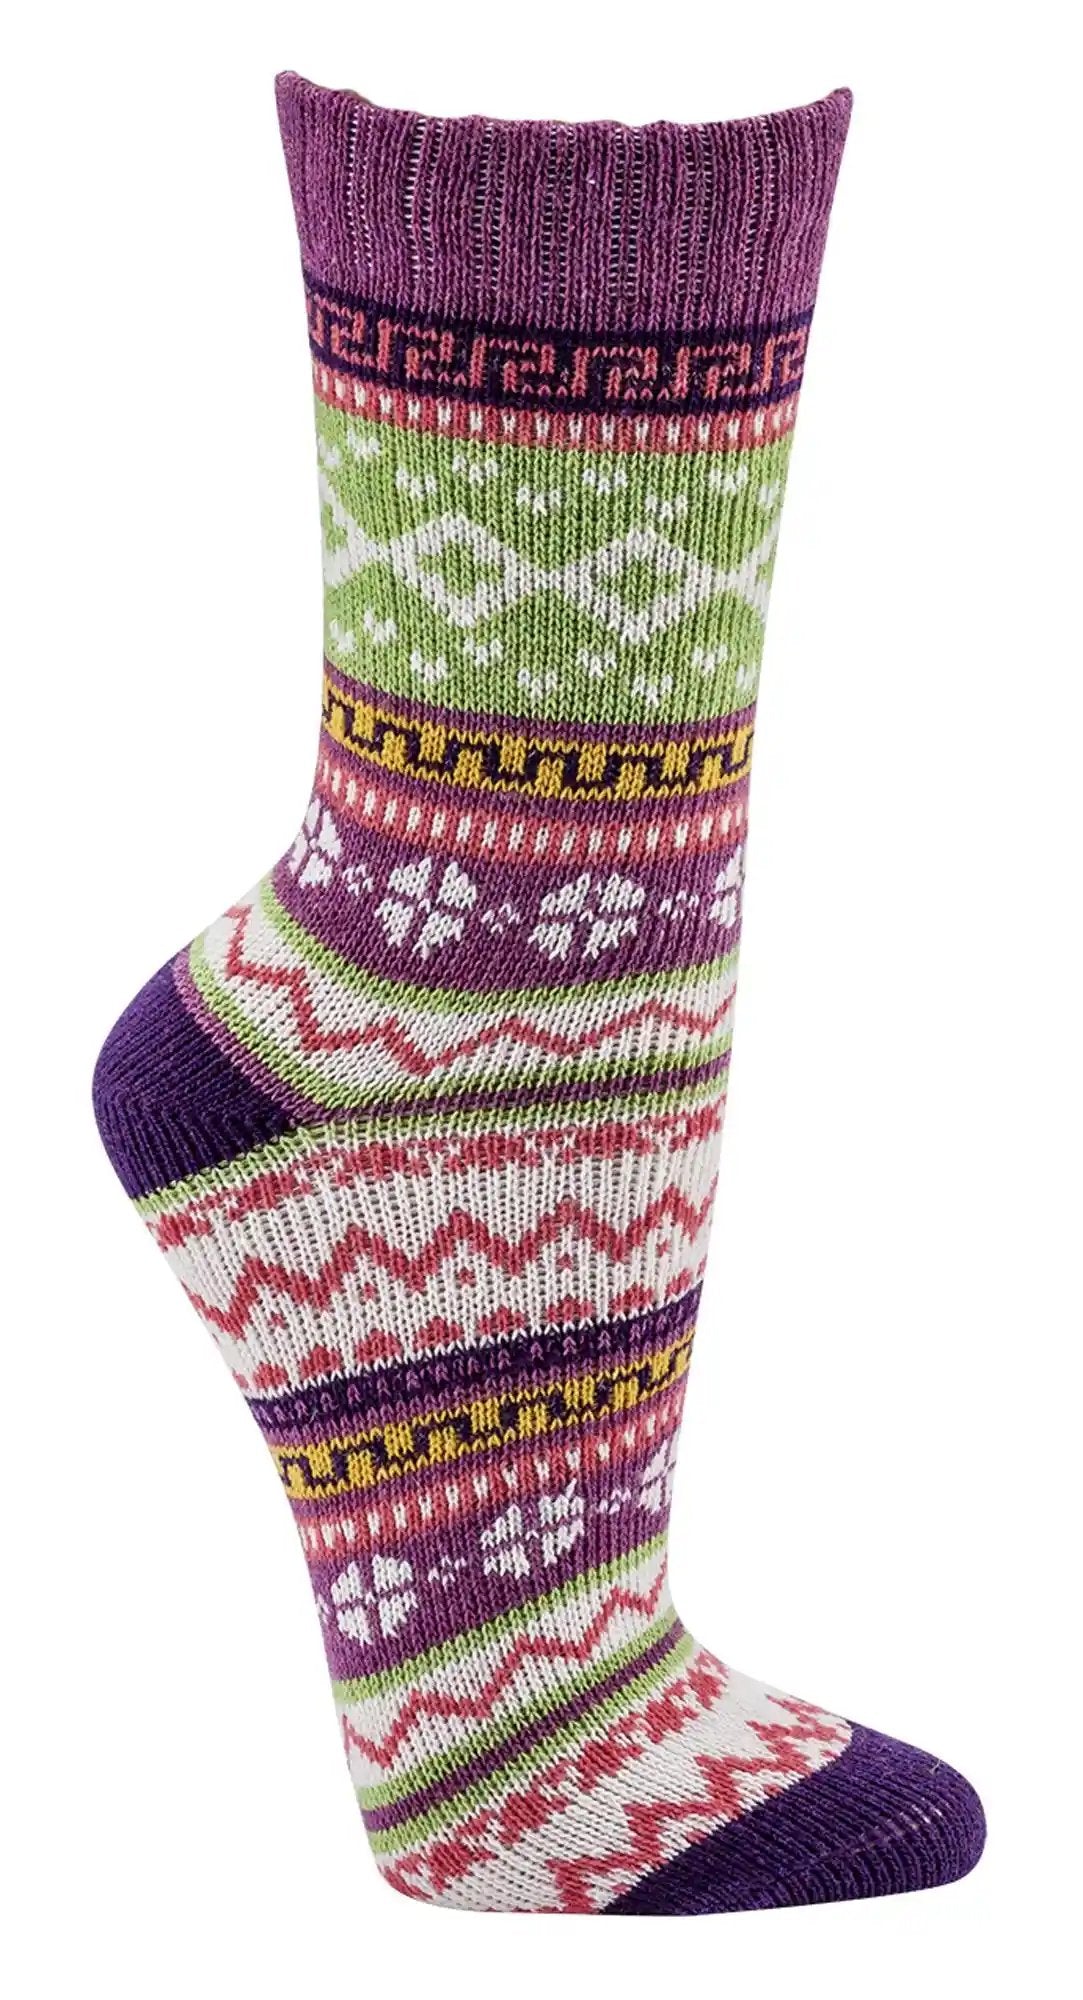 3 o 6 pares de calcetines noruegos coloridos de algodón con un bonito estampado Hygge mujer niña